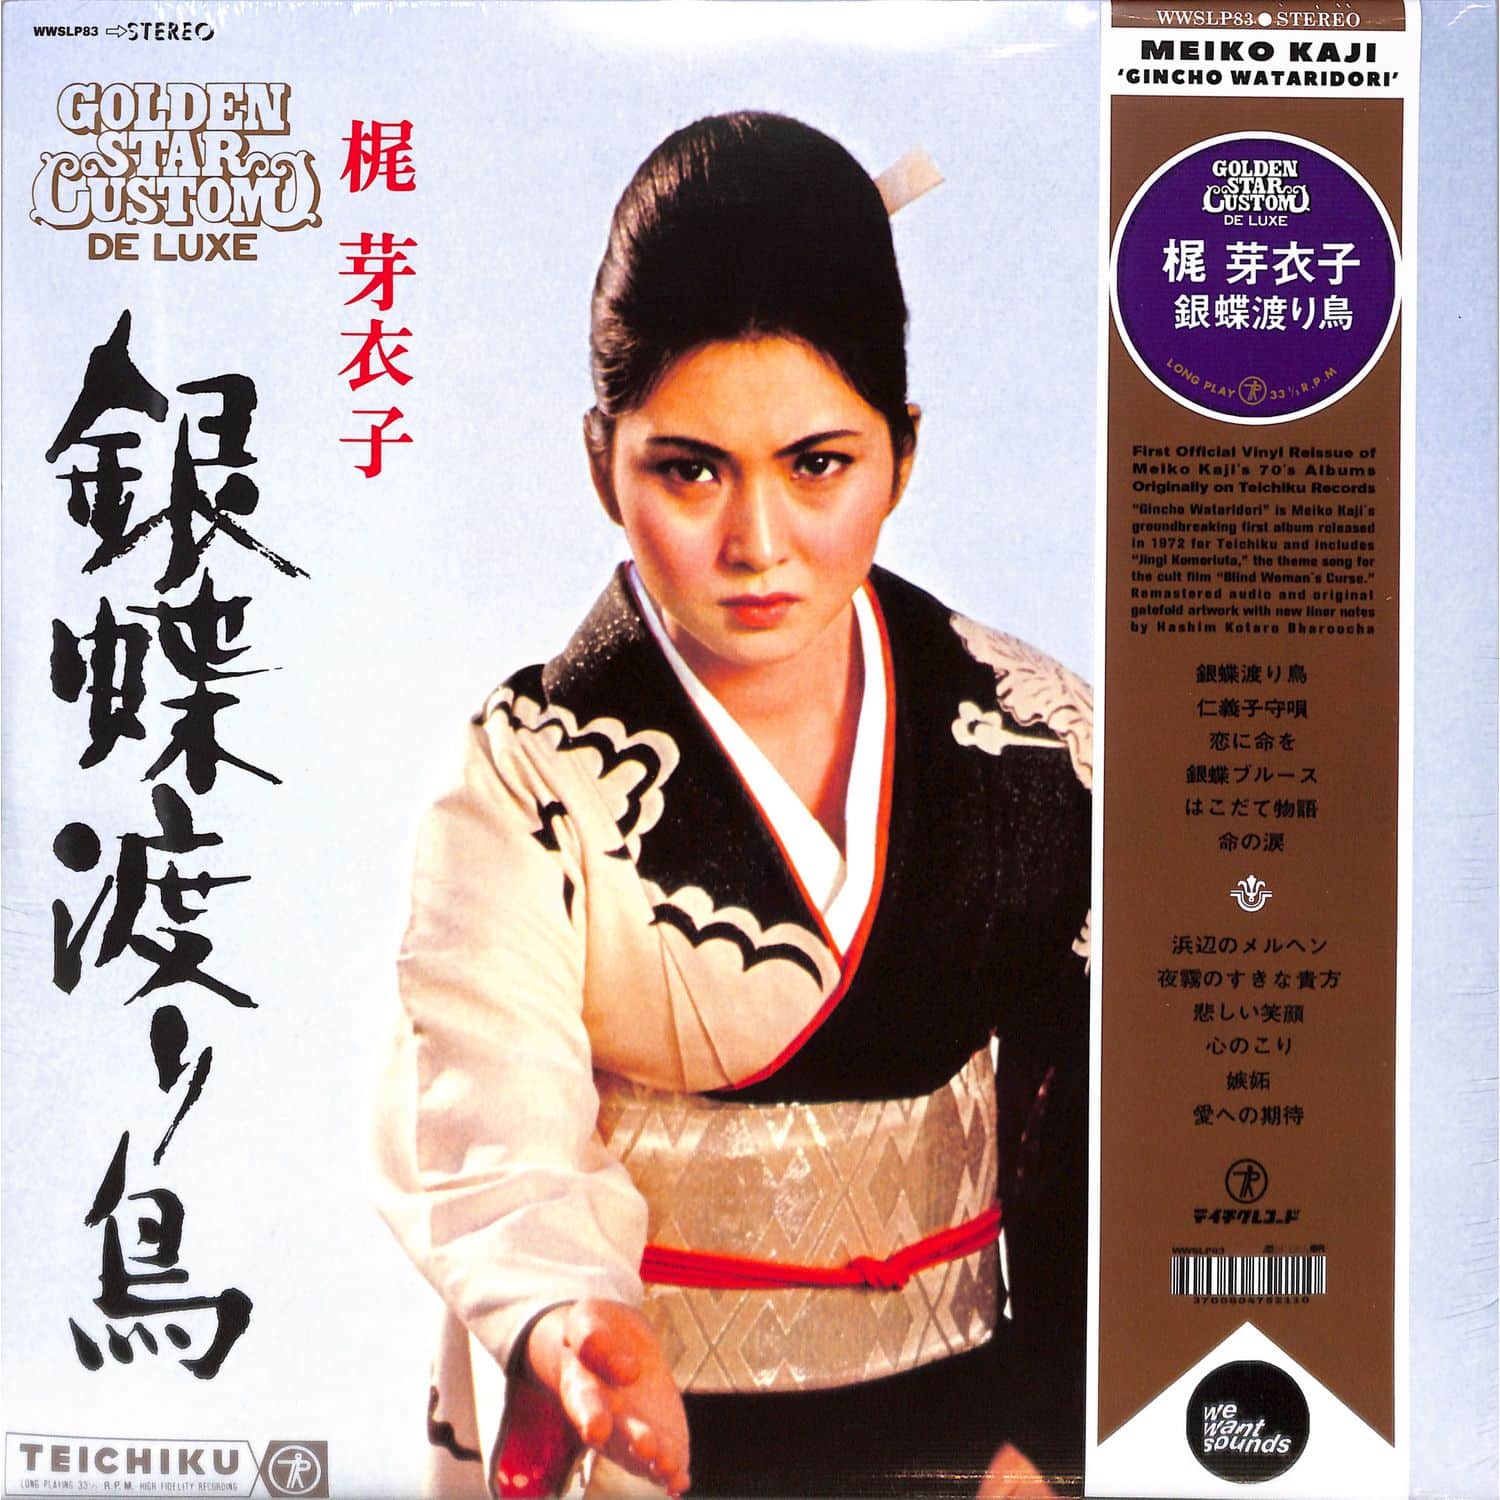 Meiko Kaji - GINCHO WATARIDORI 